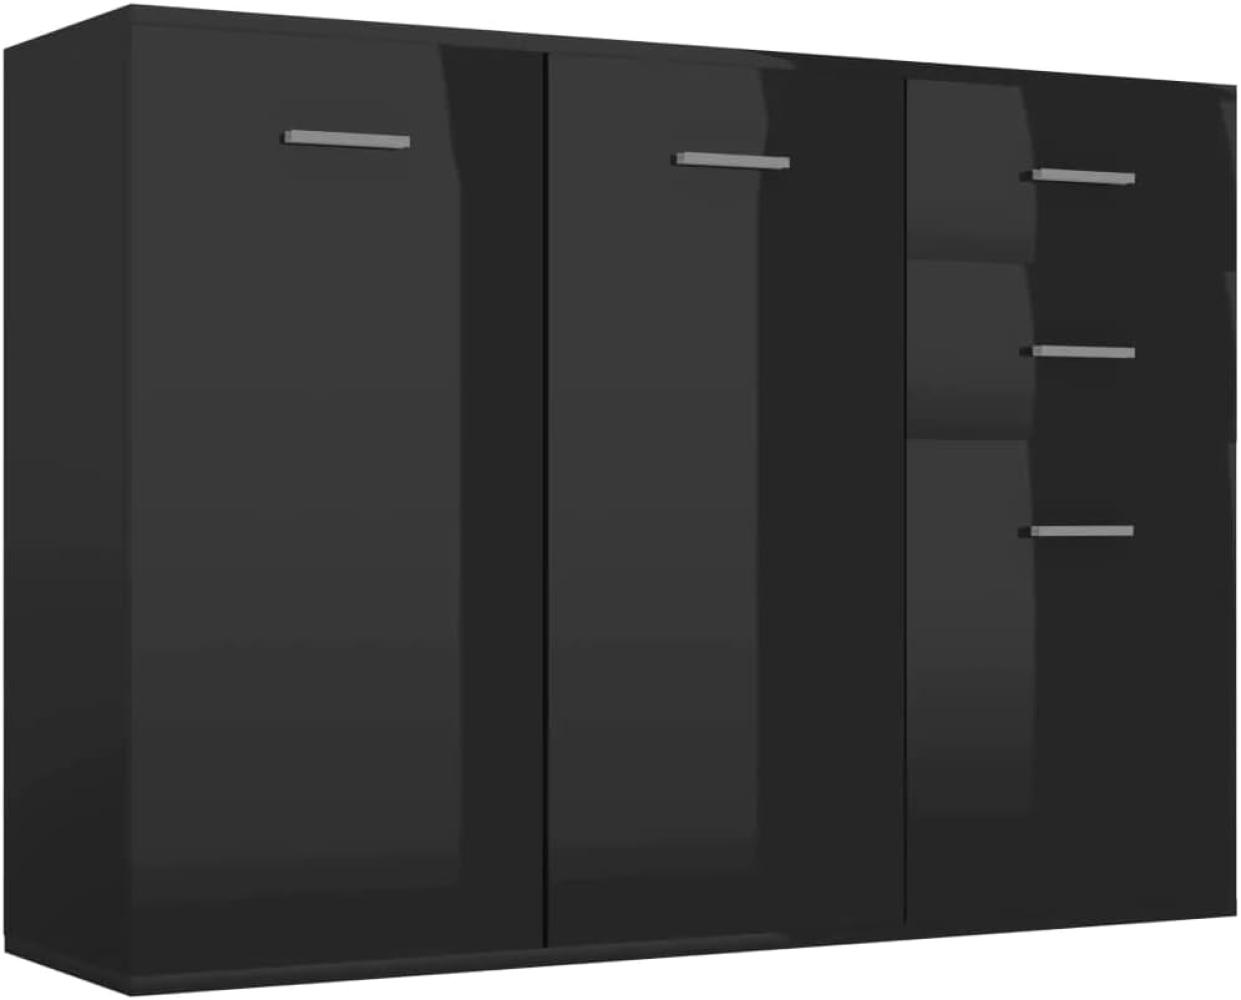 vidaXL Sideboard mit 3 Türen 2 Schubladen Highboard Kommode Standschrank Mehrzweckschrank Anrichte Schrank Hochglanz-Schwarz 105x30x75cm Spanplatte Bild 1